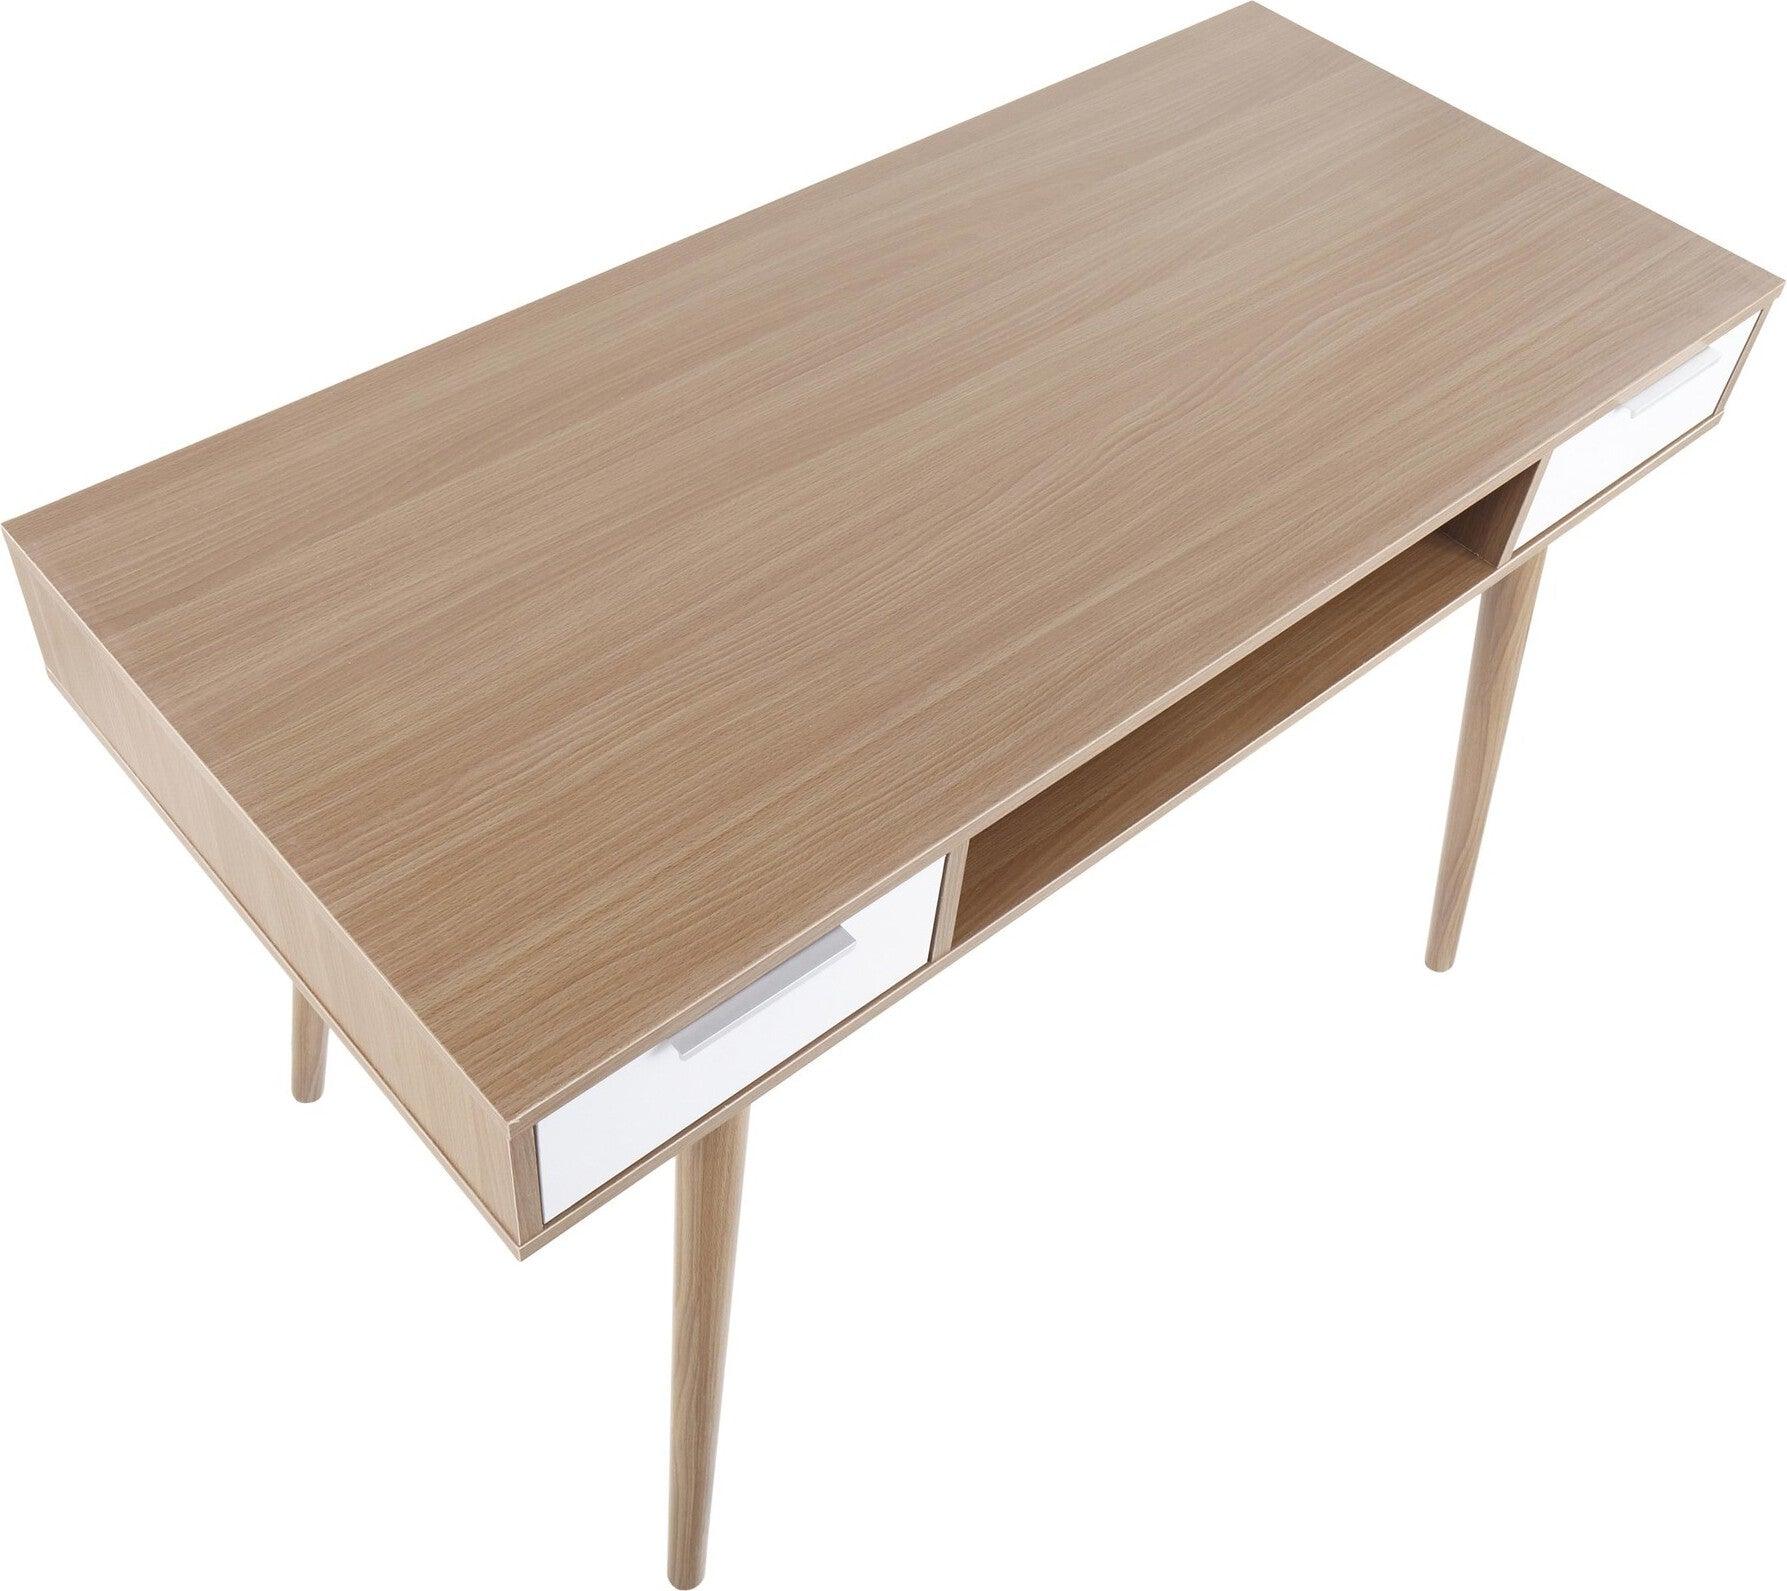 Lumisource Desks - Pebble Double Desk Natural & White